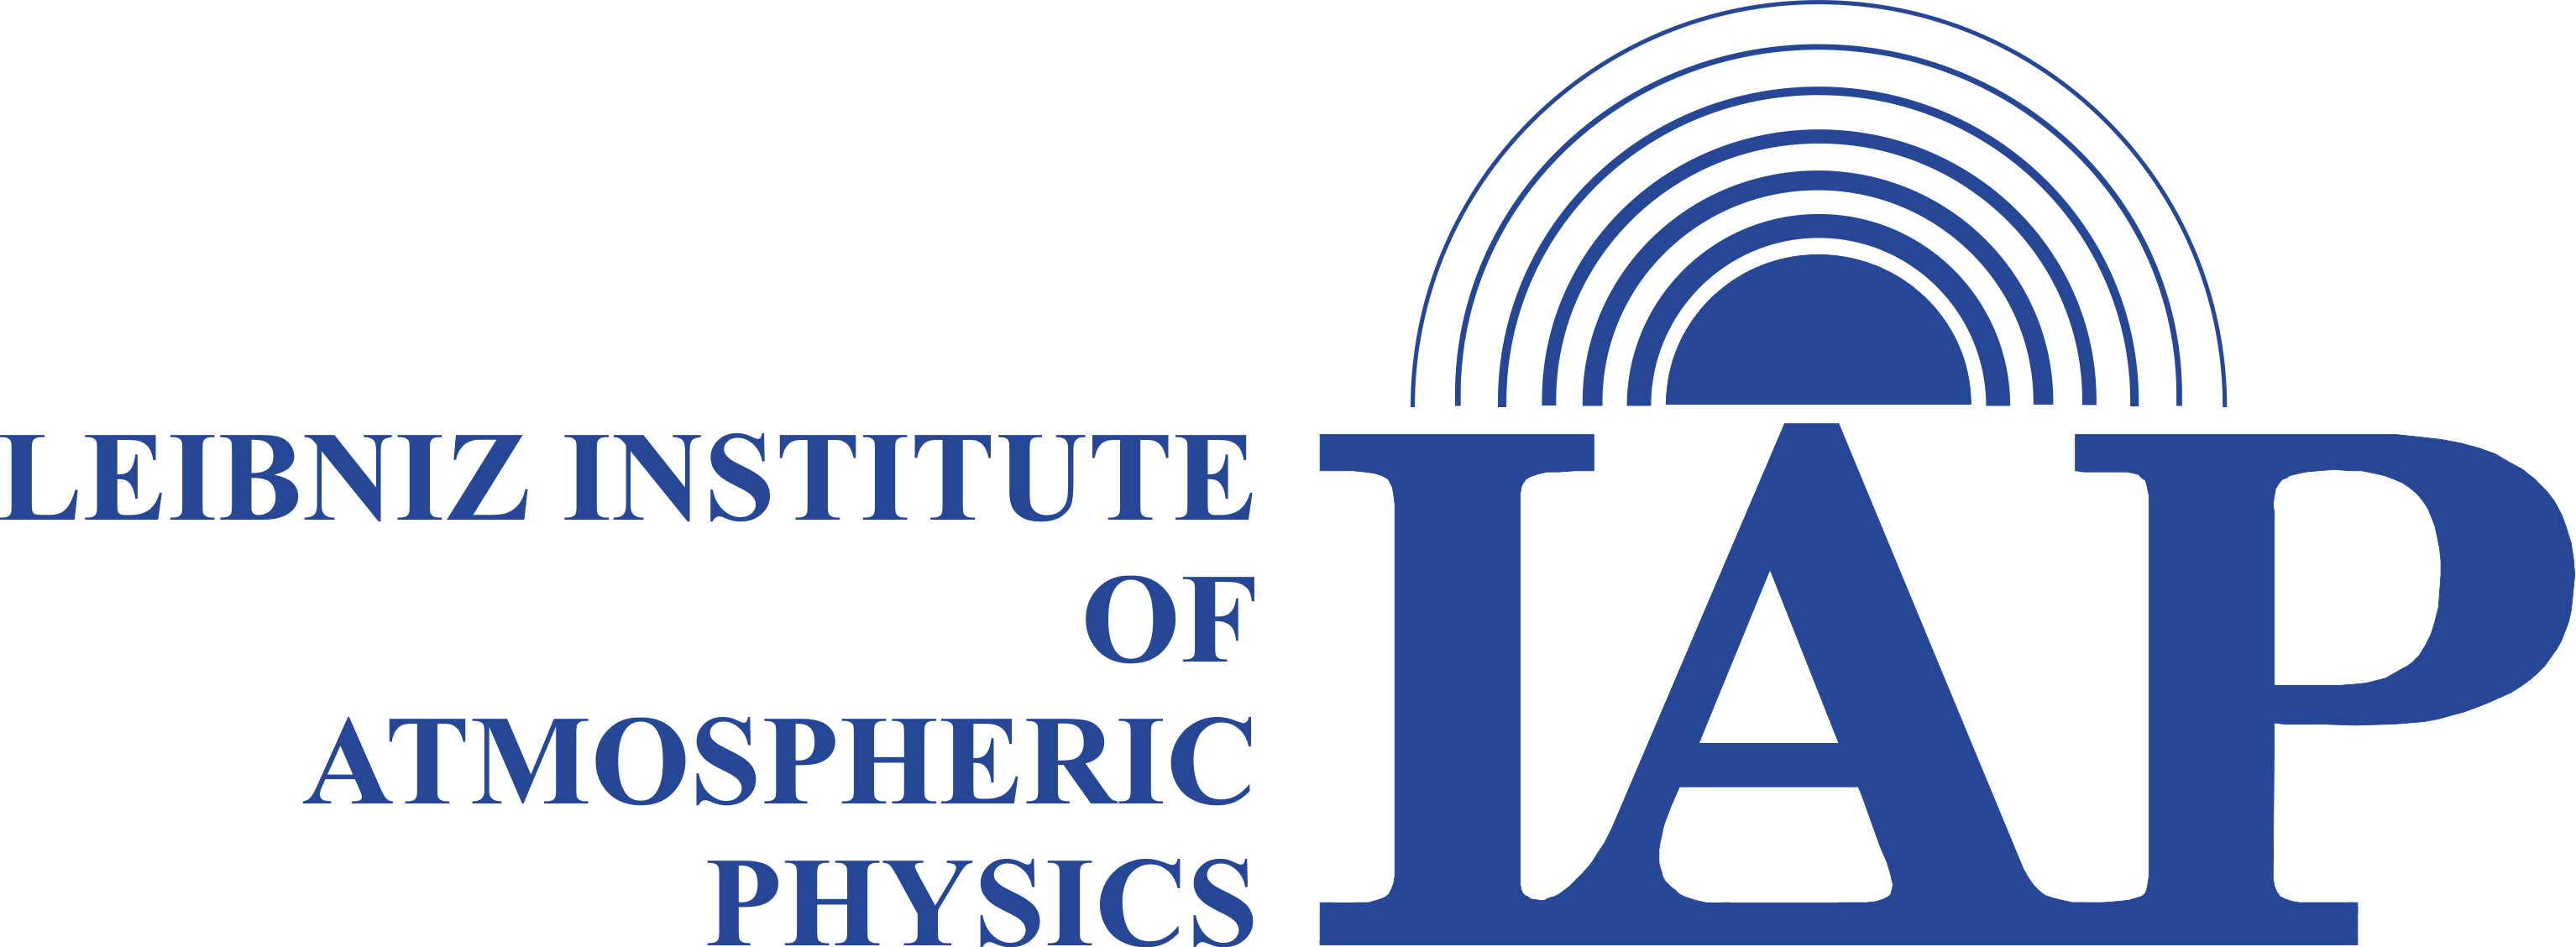 Liebnitz Institute of Atmospheric Physics